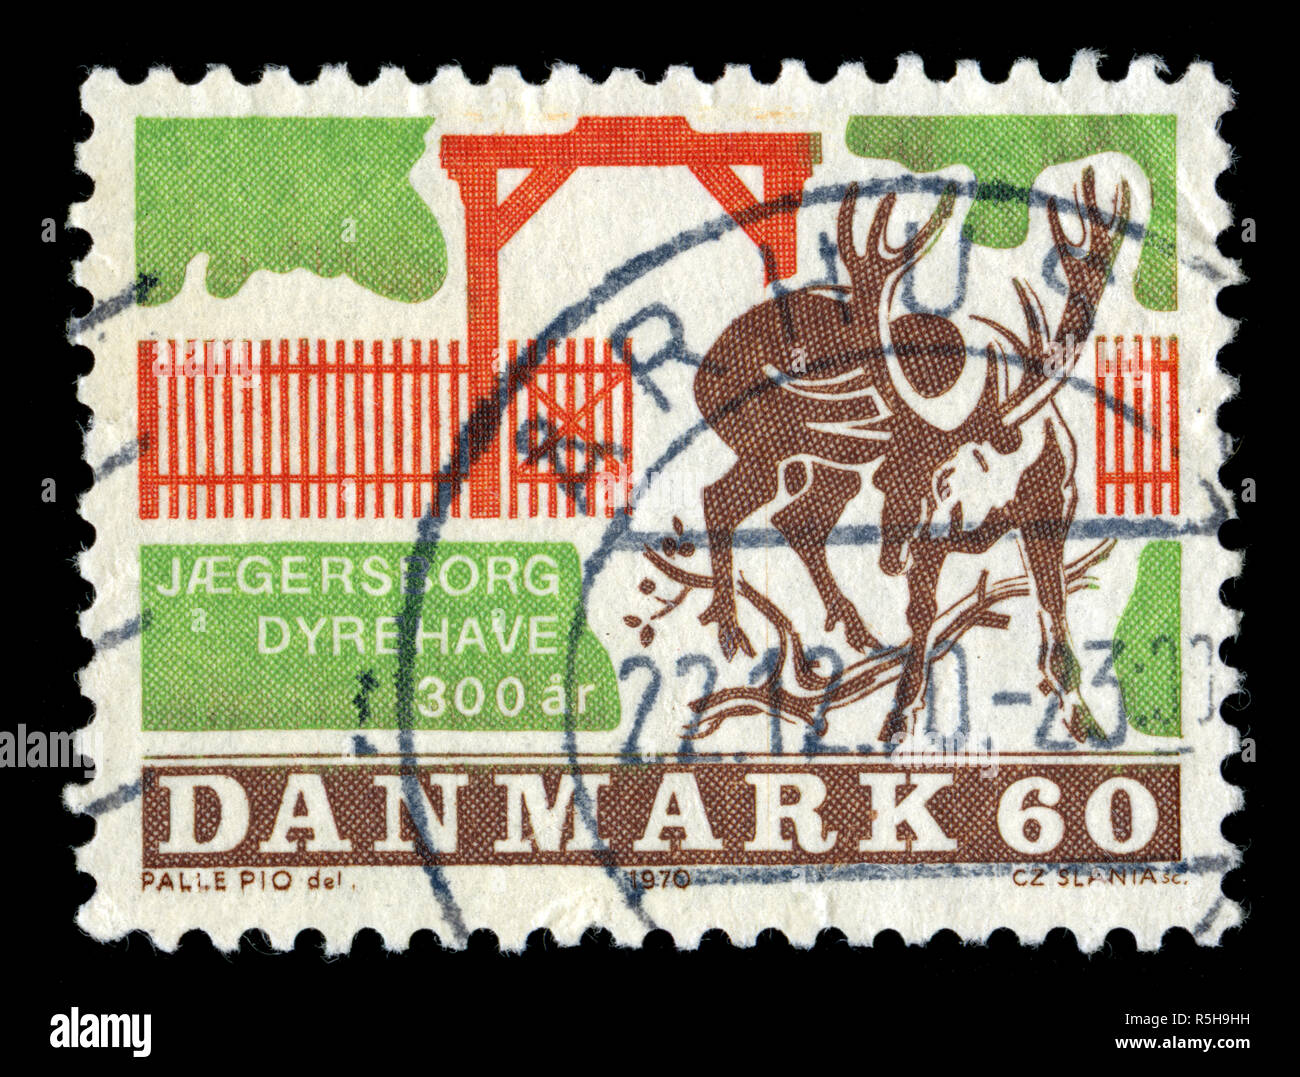 Timbre-poste du Danemark dans la série émise en Banque D'Images